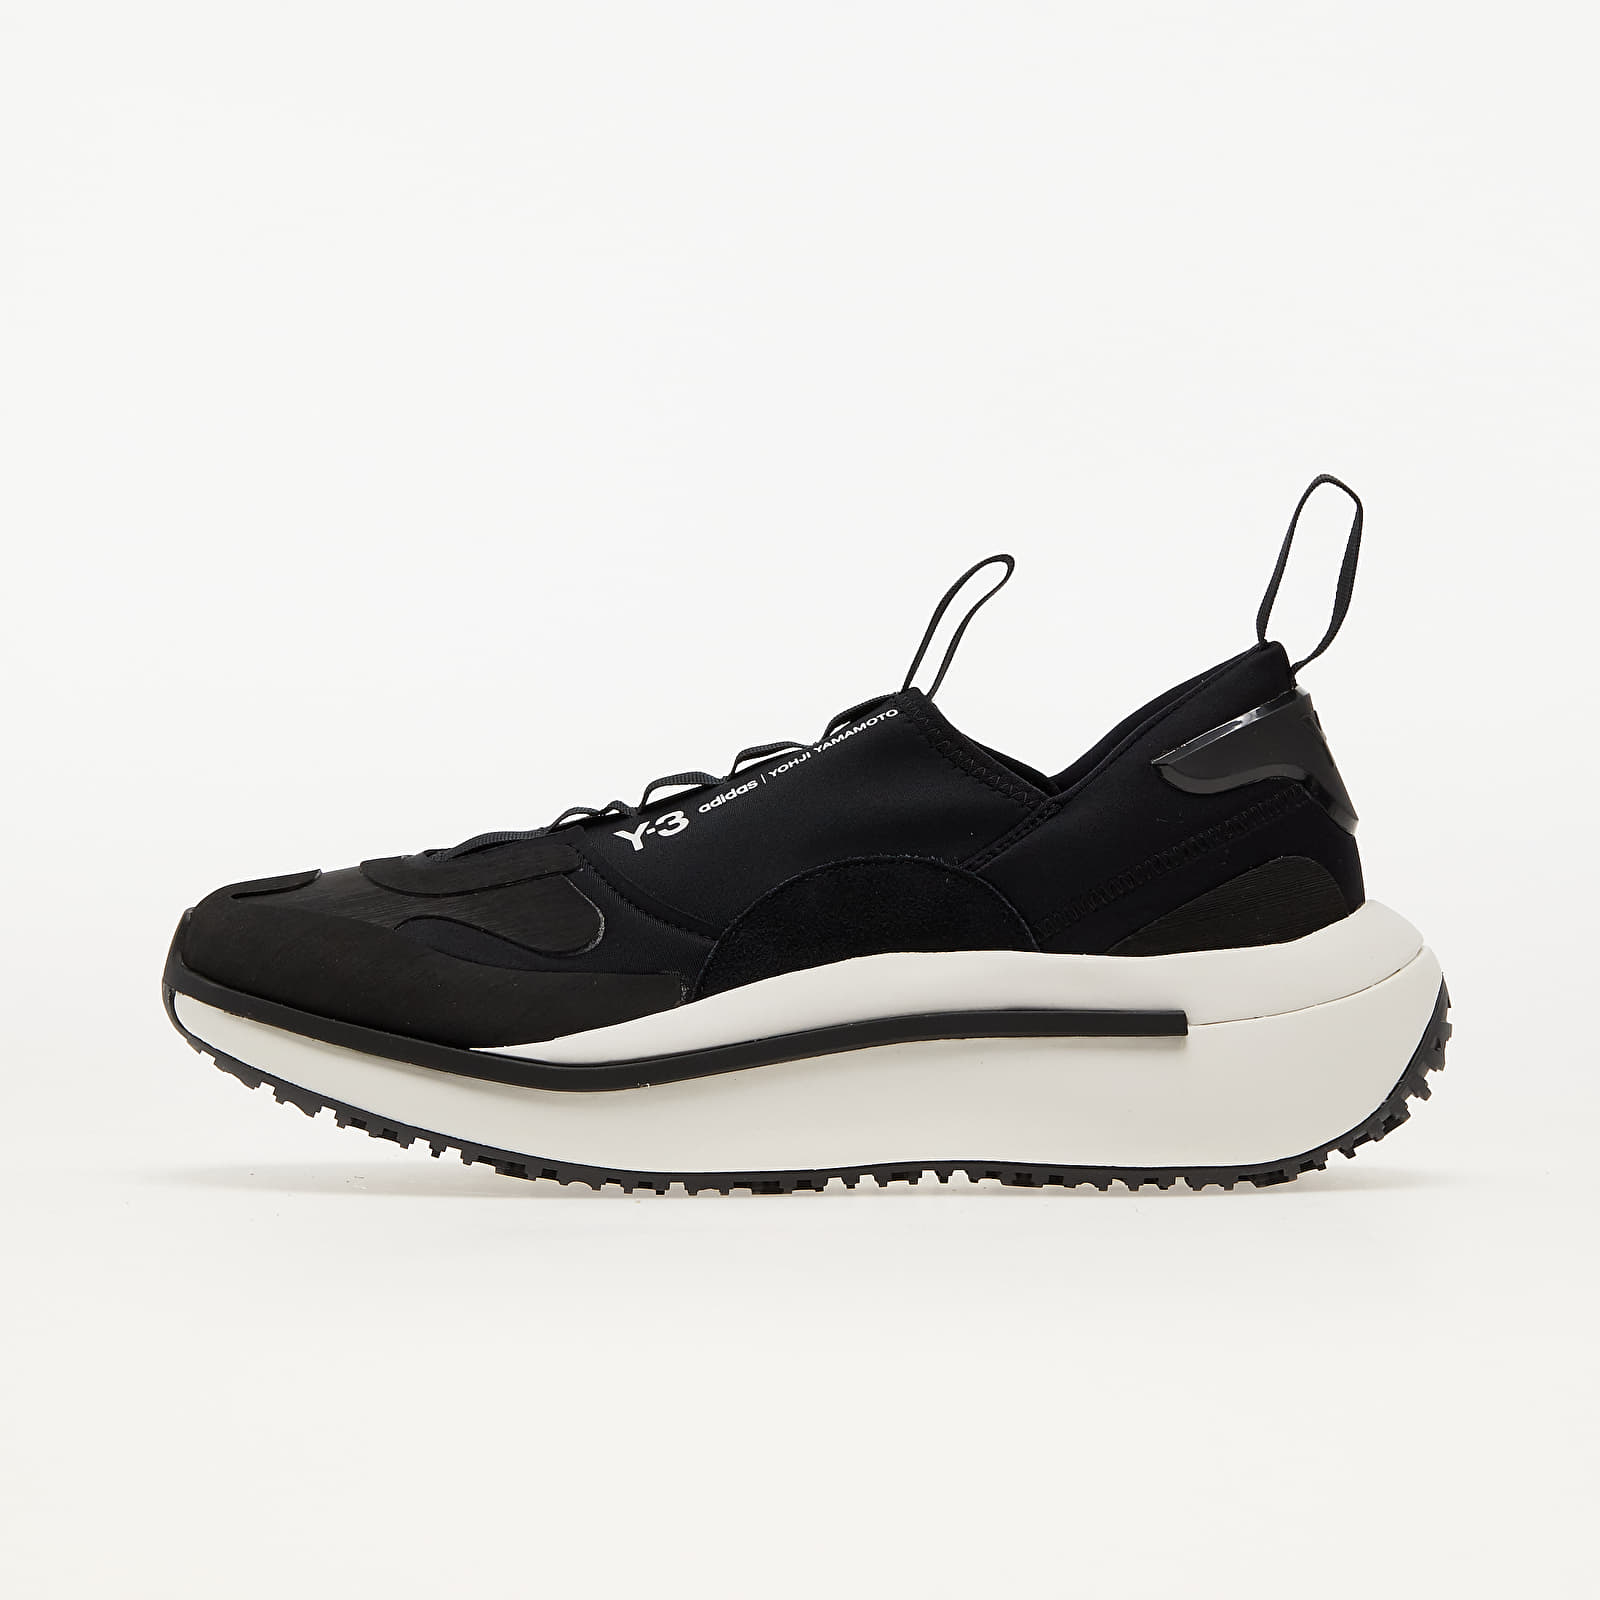 Men's shoes Y-3 Qisan Cozy Black/ Black/ Core White